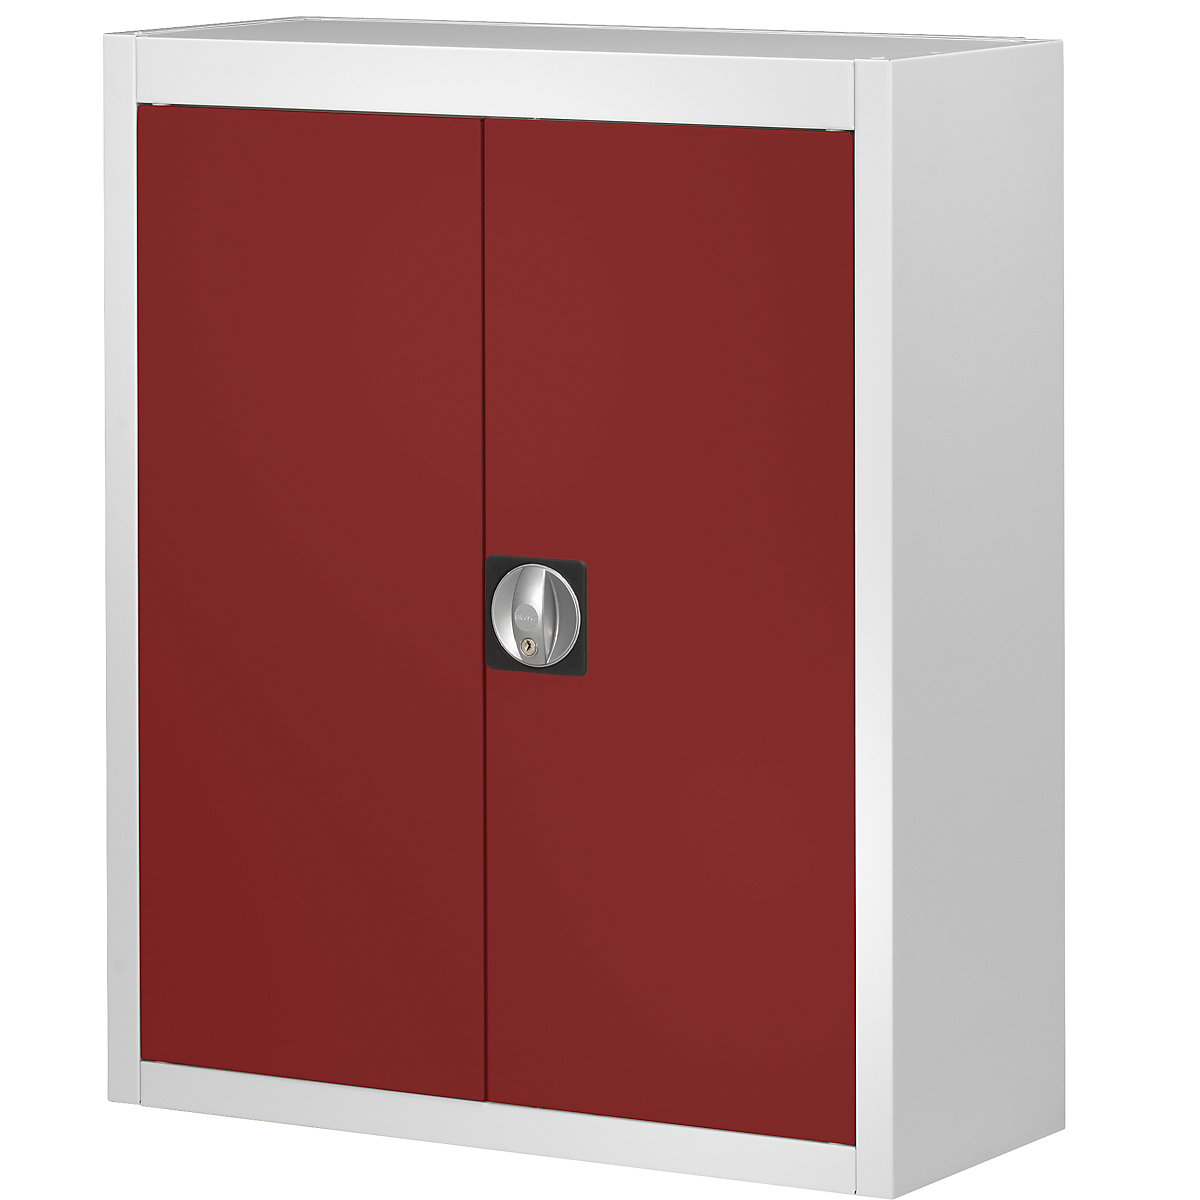 Skladová skriňa bez prepraviek s viditeľným obsahom – mauser, v x š x h 820 x 680 x 280 mm, dvojfarebná, korpus šedý, dvere červené-5